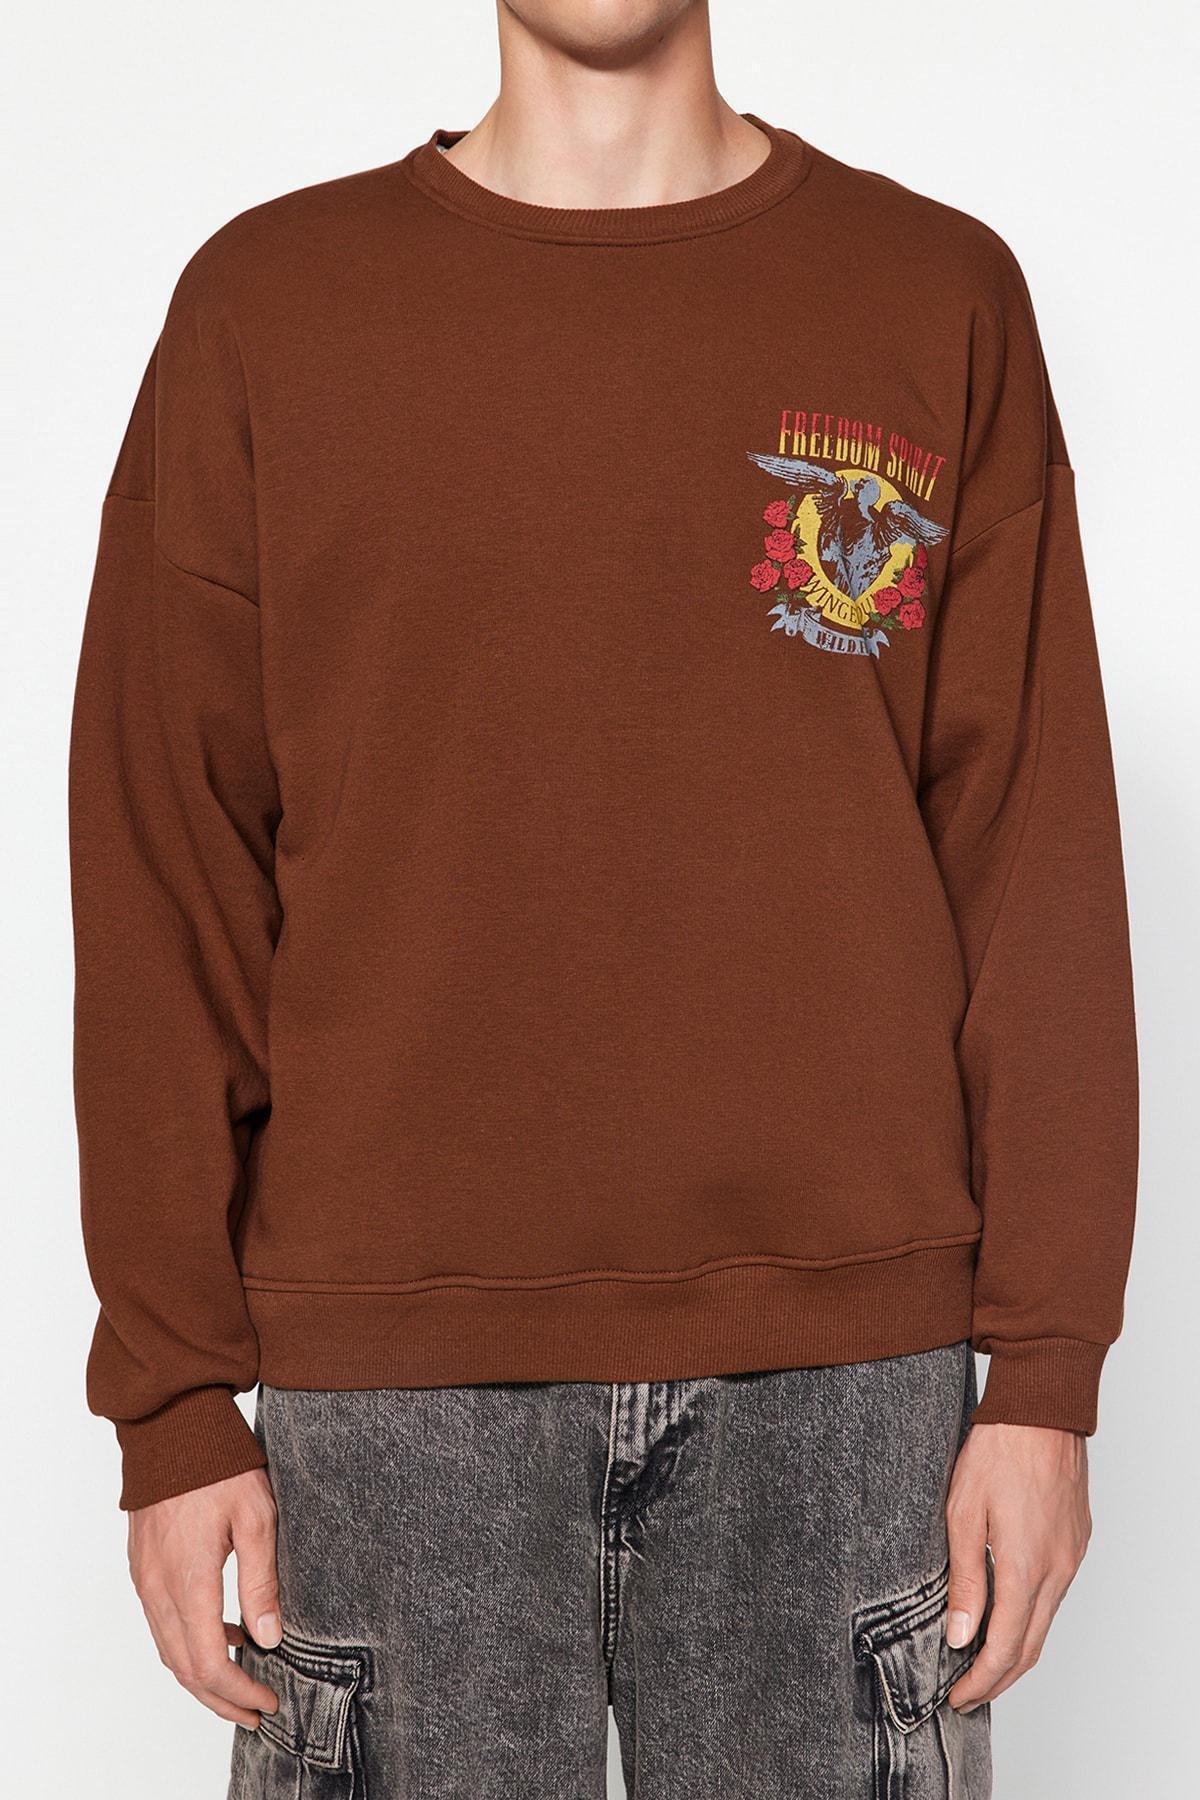 Trendyol - Brown Oversize Printed Fleece Sweatshirt.